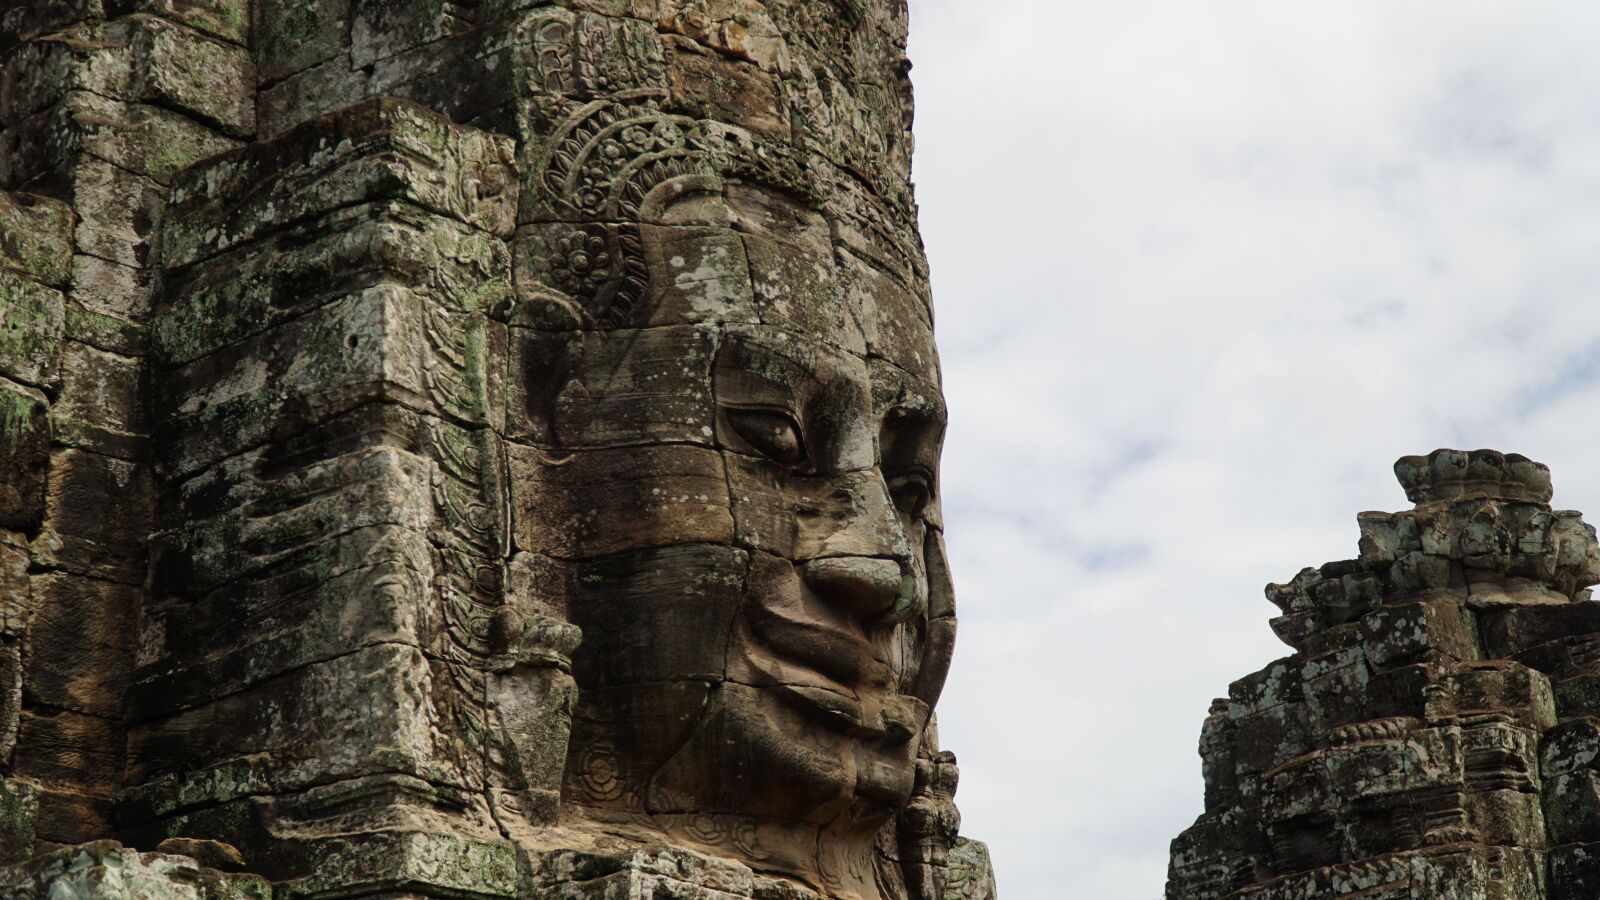 Sony a6300 sample photo. Angkor wat, angkor thom photography